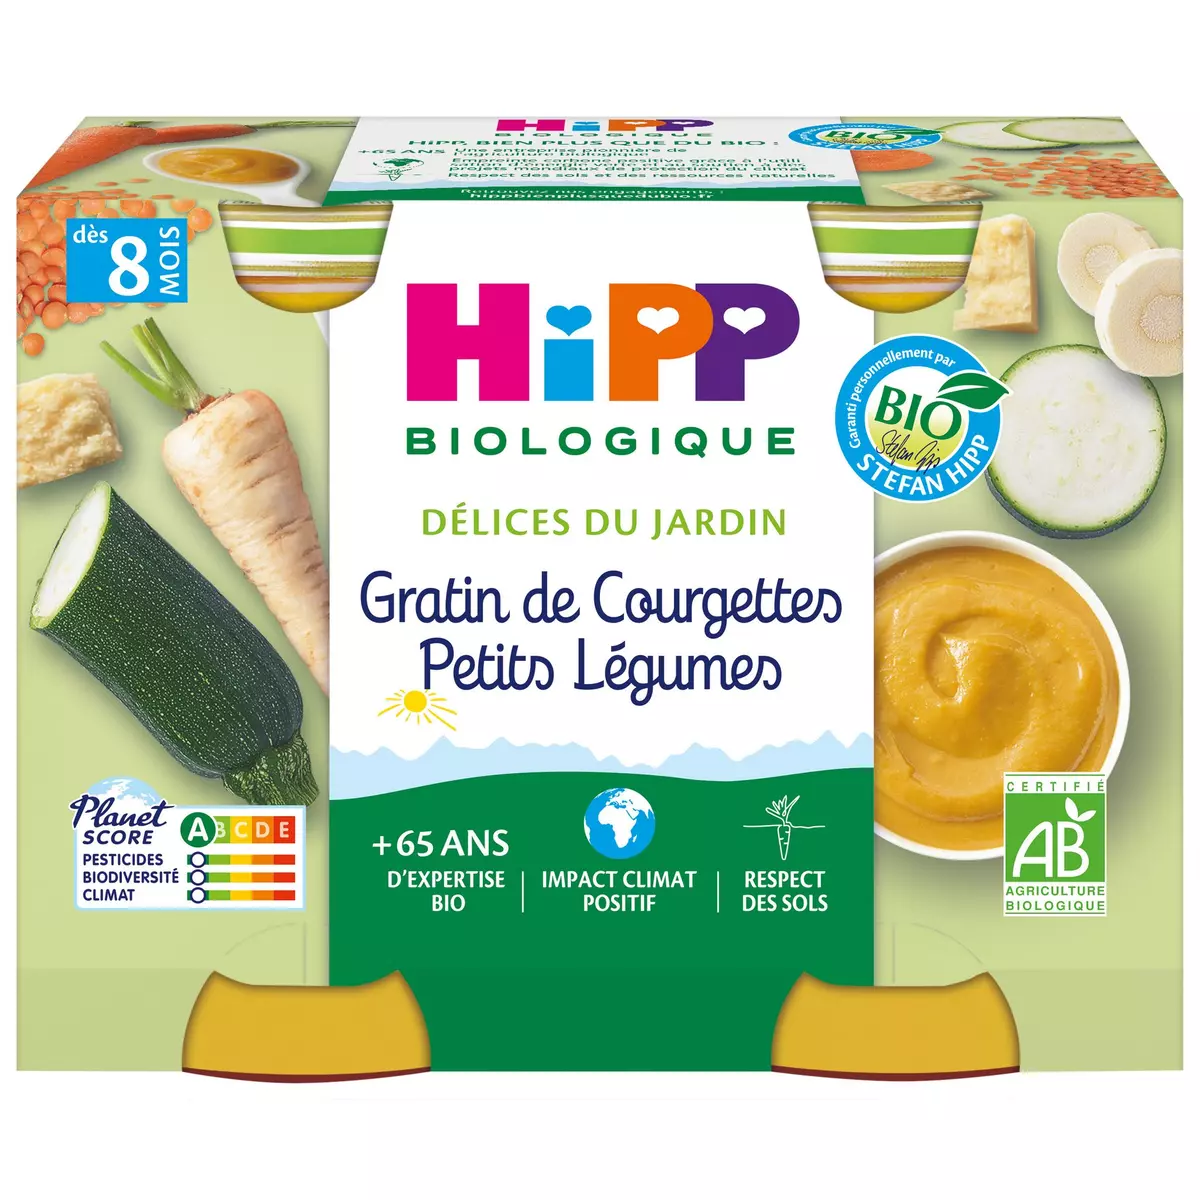 HIPP Petit pot gratin de courgettes petits légumes bio dès 8 mois 2x190g